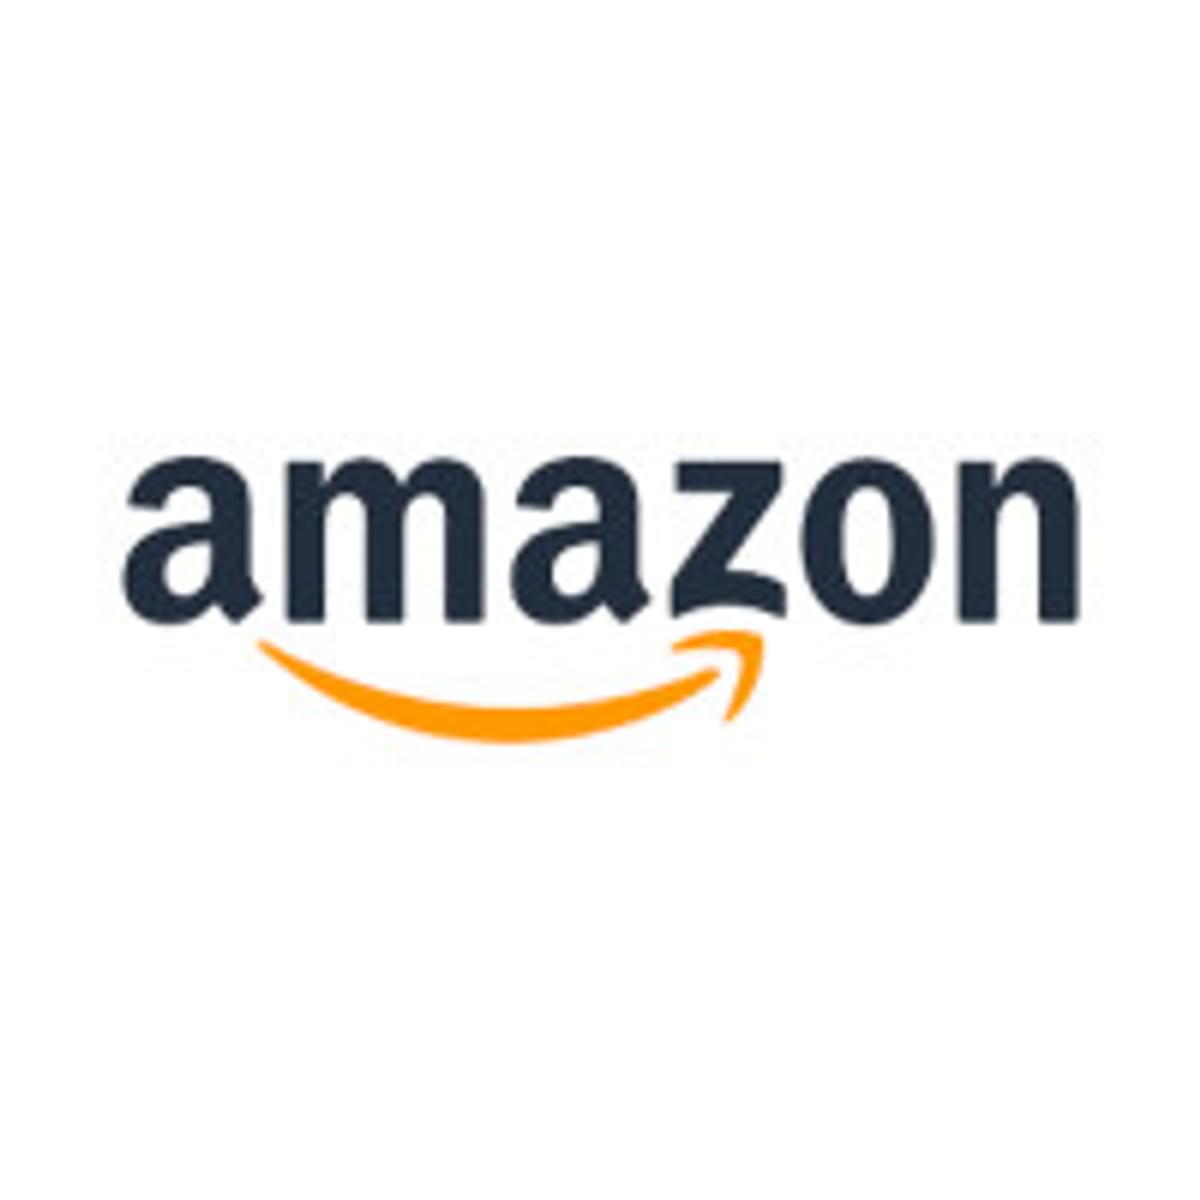 Amazon verlaagt afdracht voor kleine ontwikkelaars image